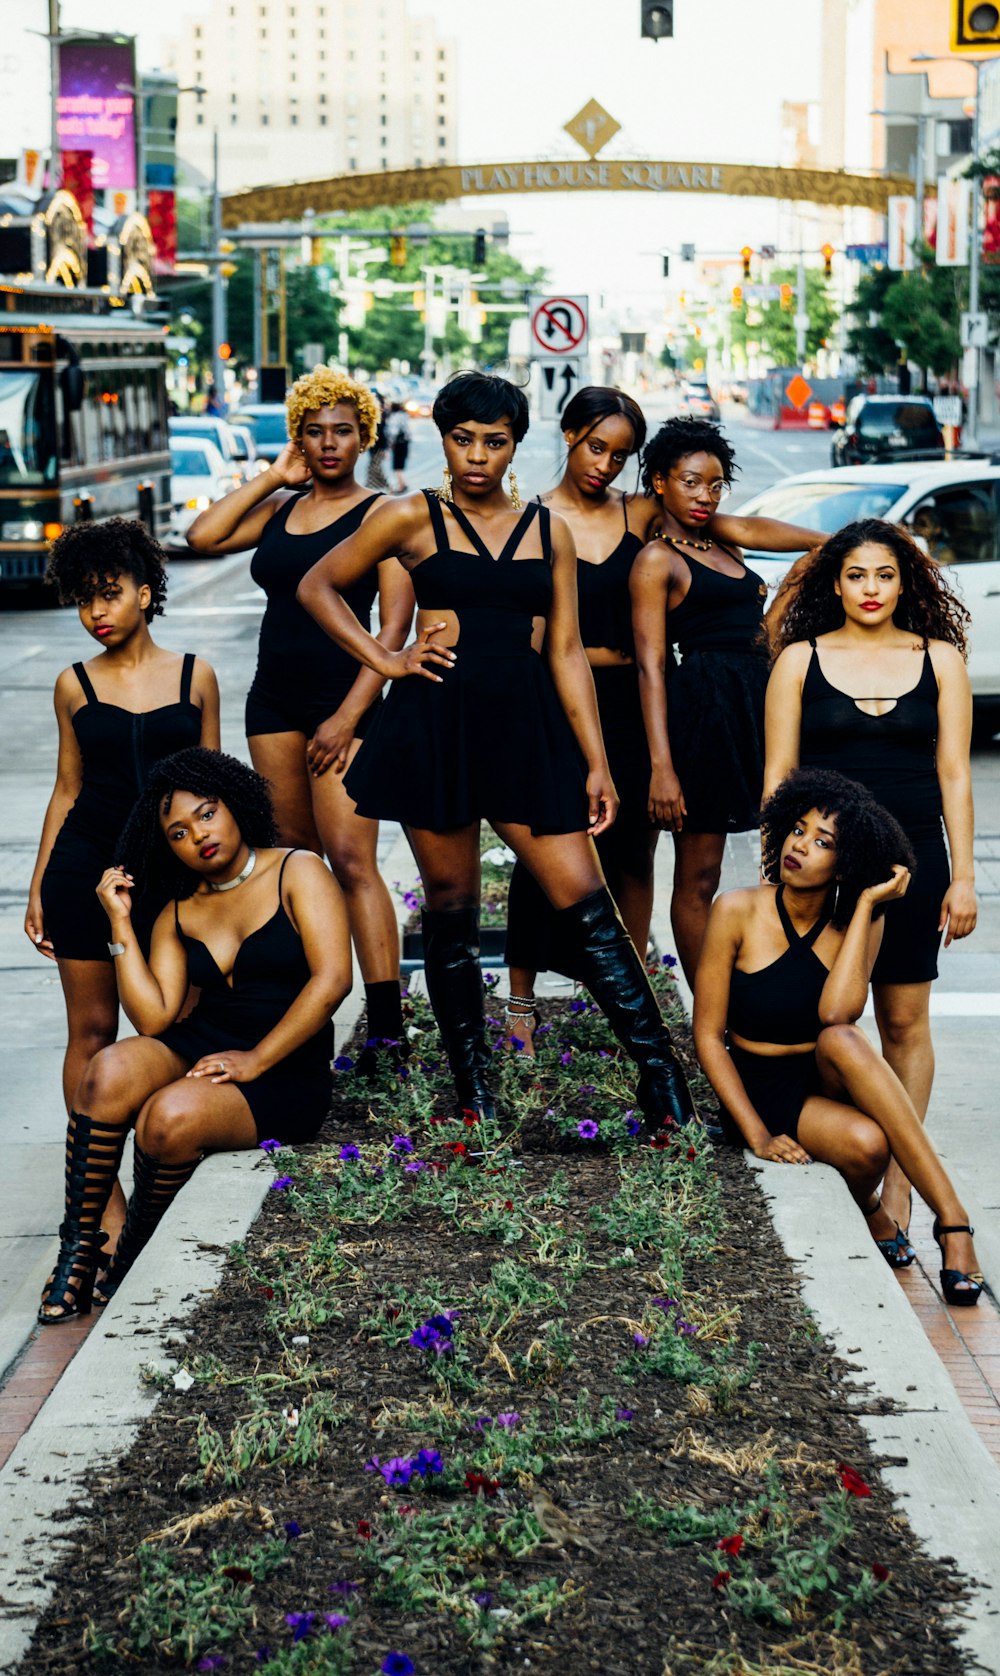 Gruppe von Frauen in schwarzem Tanktop und schwarzen Shorts auf Betonbank